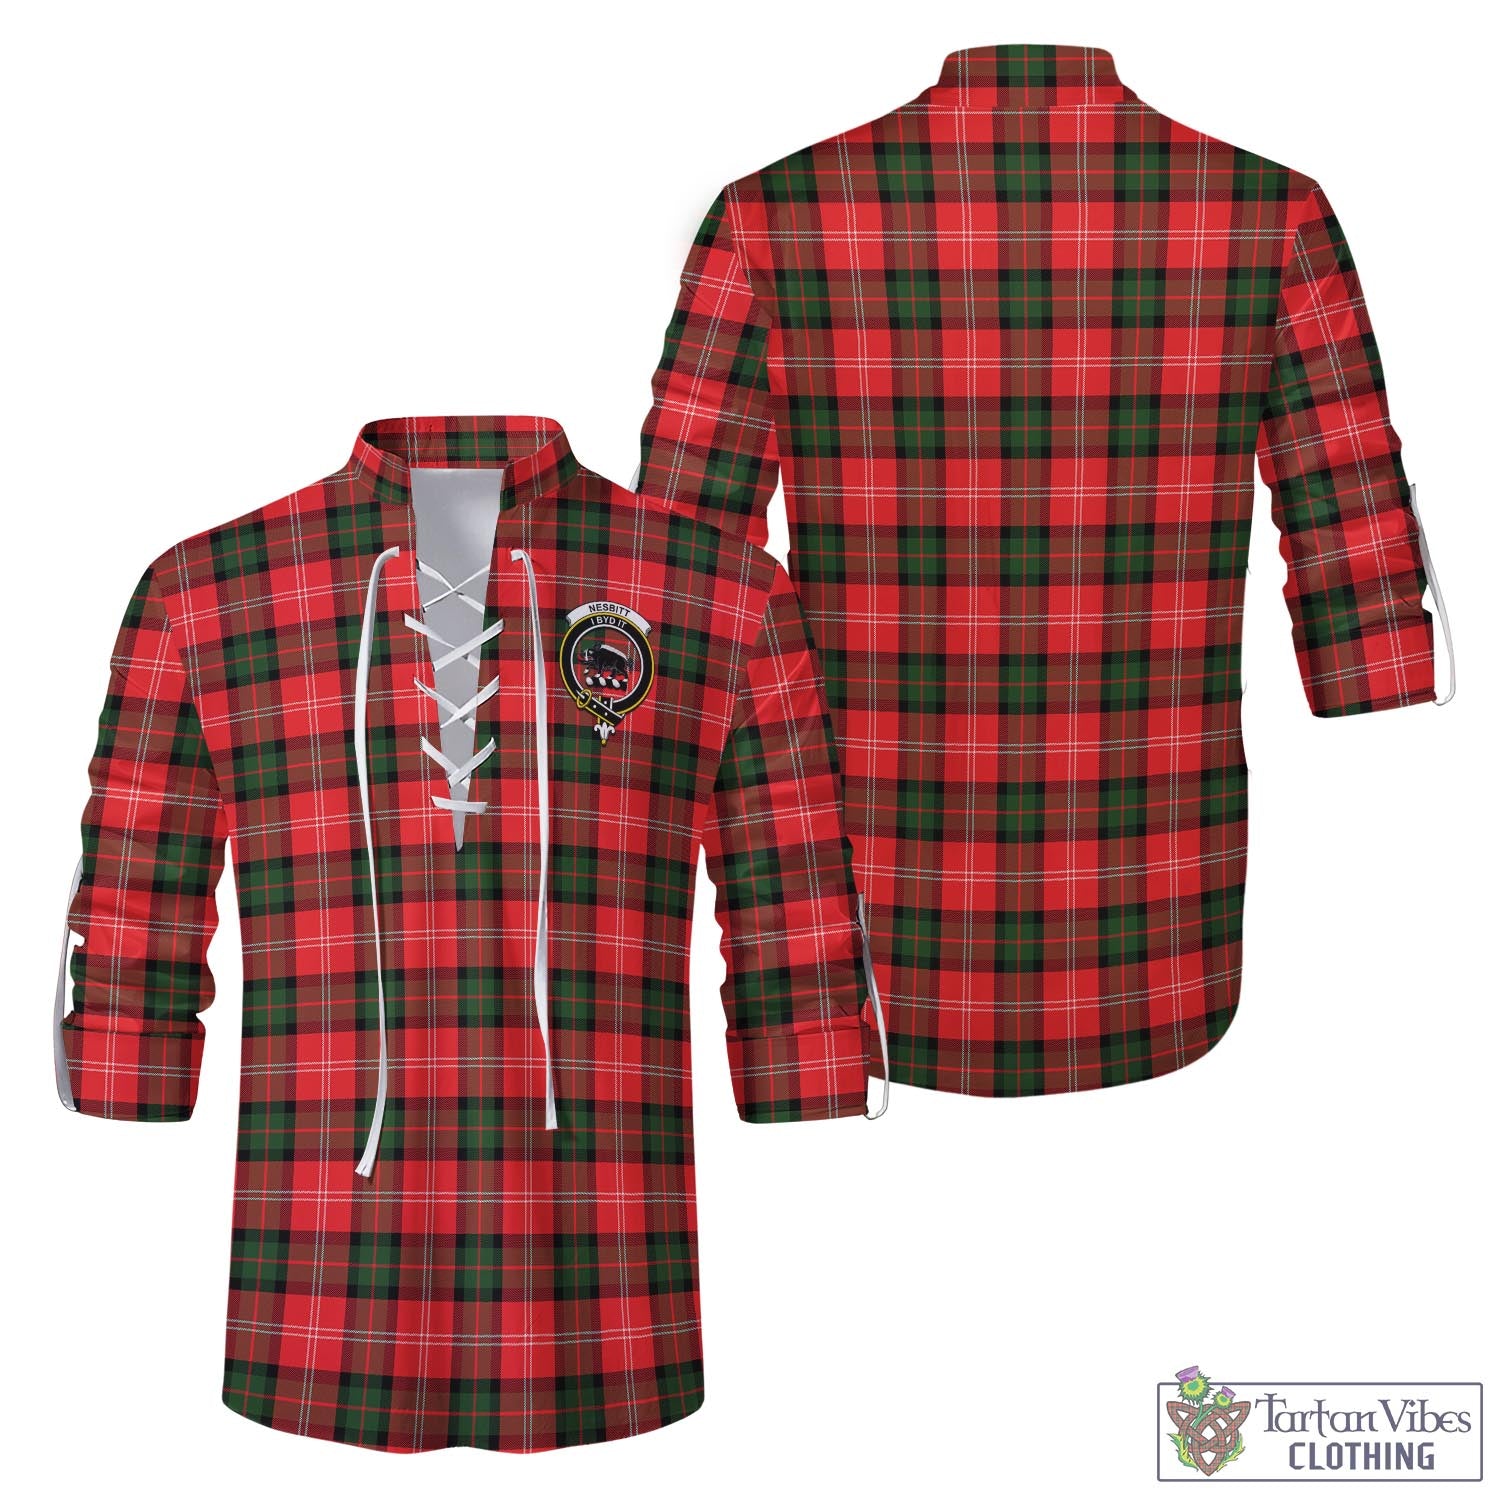 Tartan Vibes Clothing Nesbitt Modern Tartan Men's Scottish Traditional Jacobite Ghillie Kilt Shirt with Family Crest